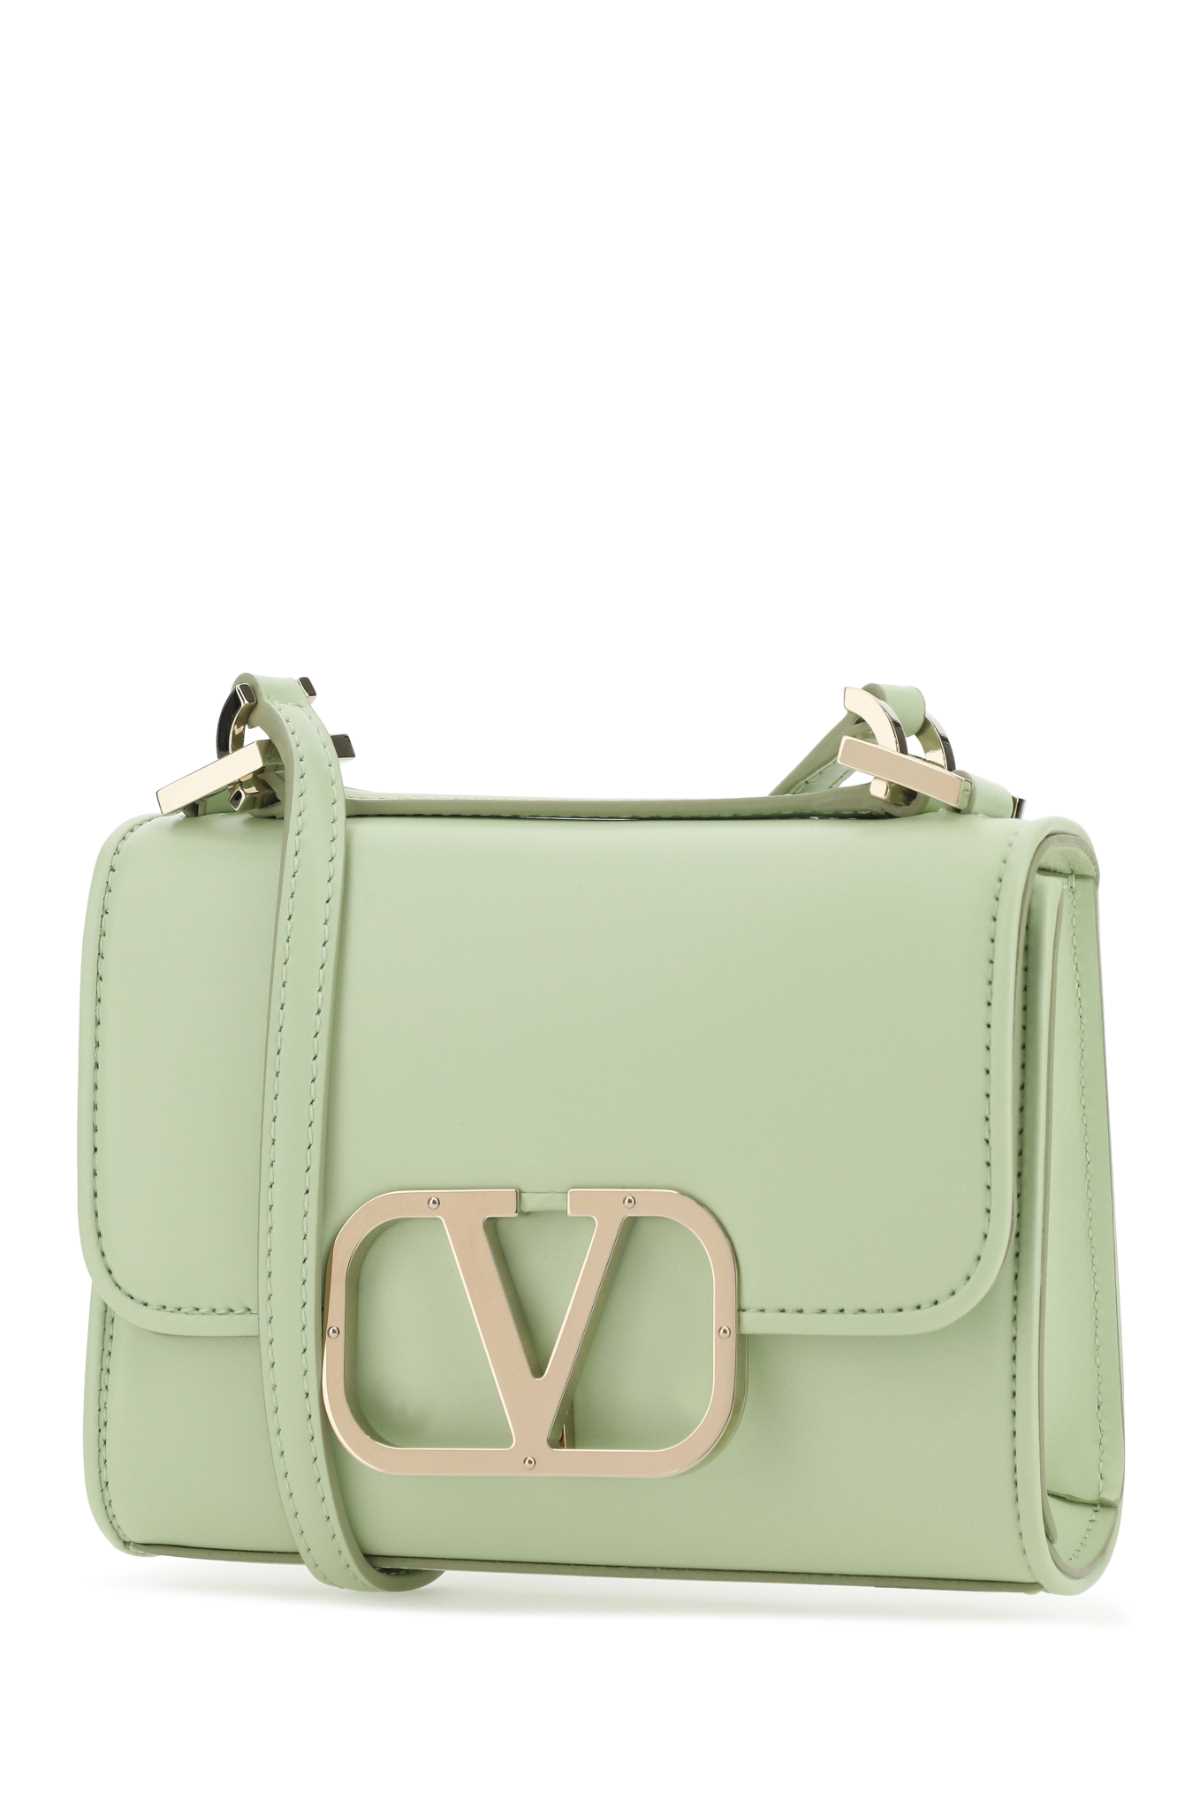 Valentino Garavani Pastel Green Vlogo Crossbody Bag